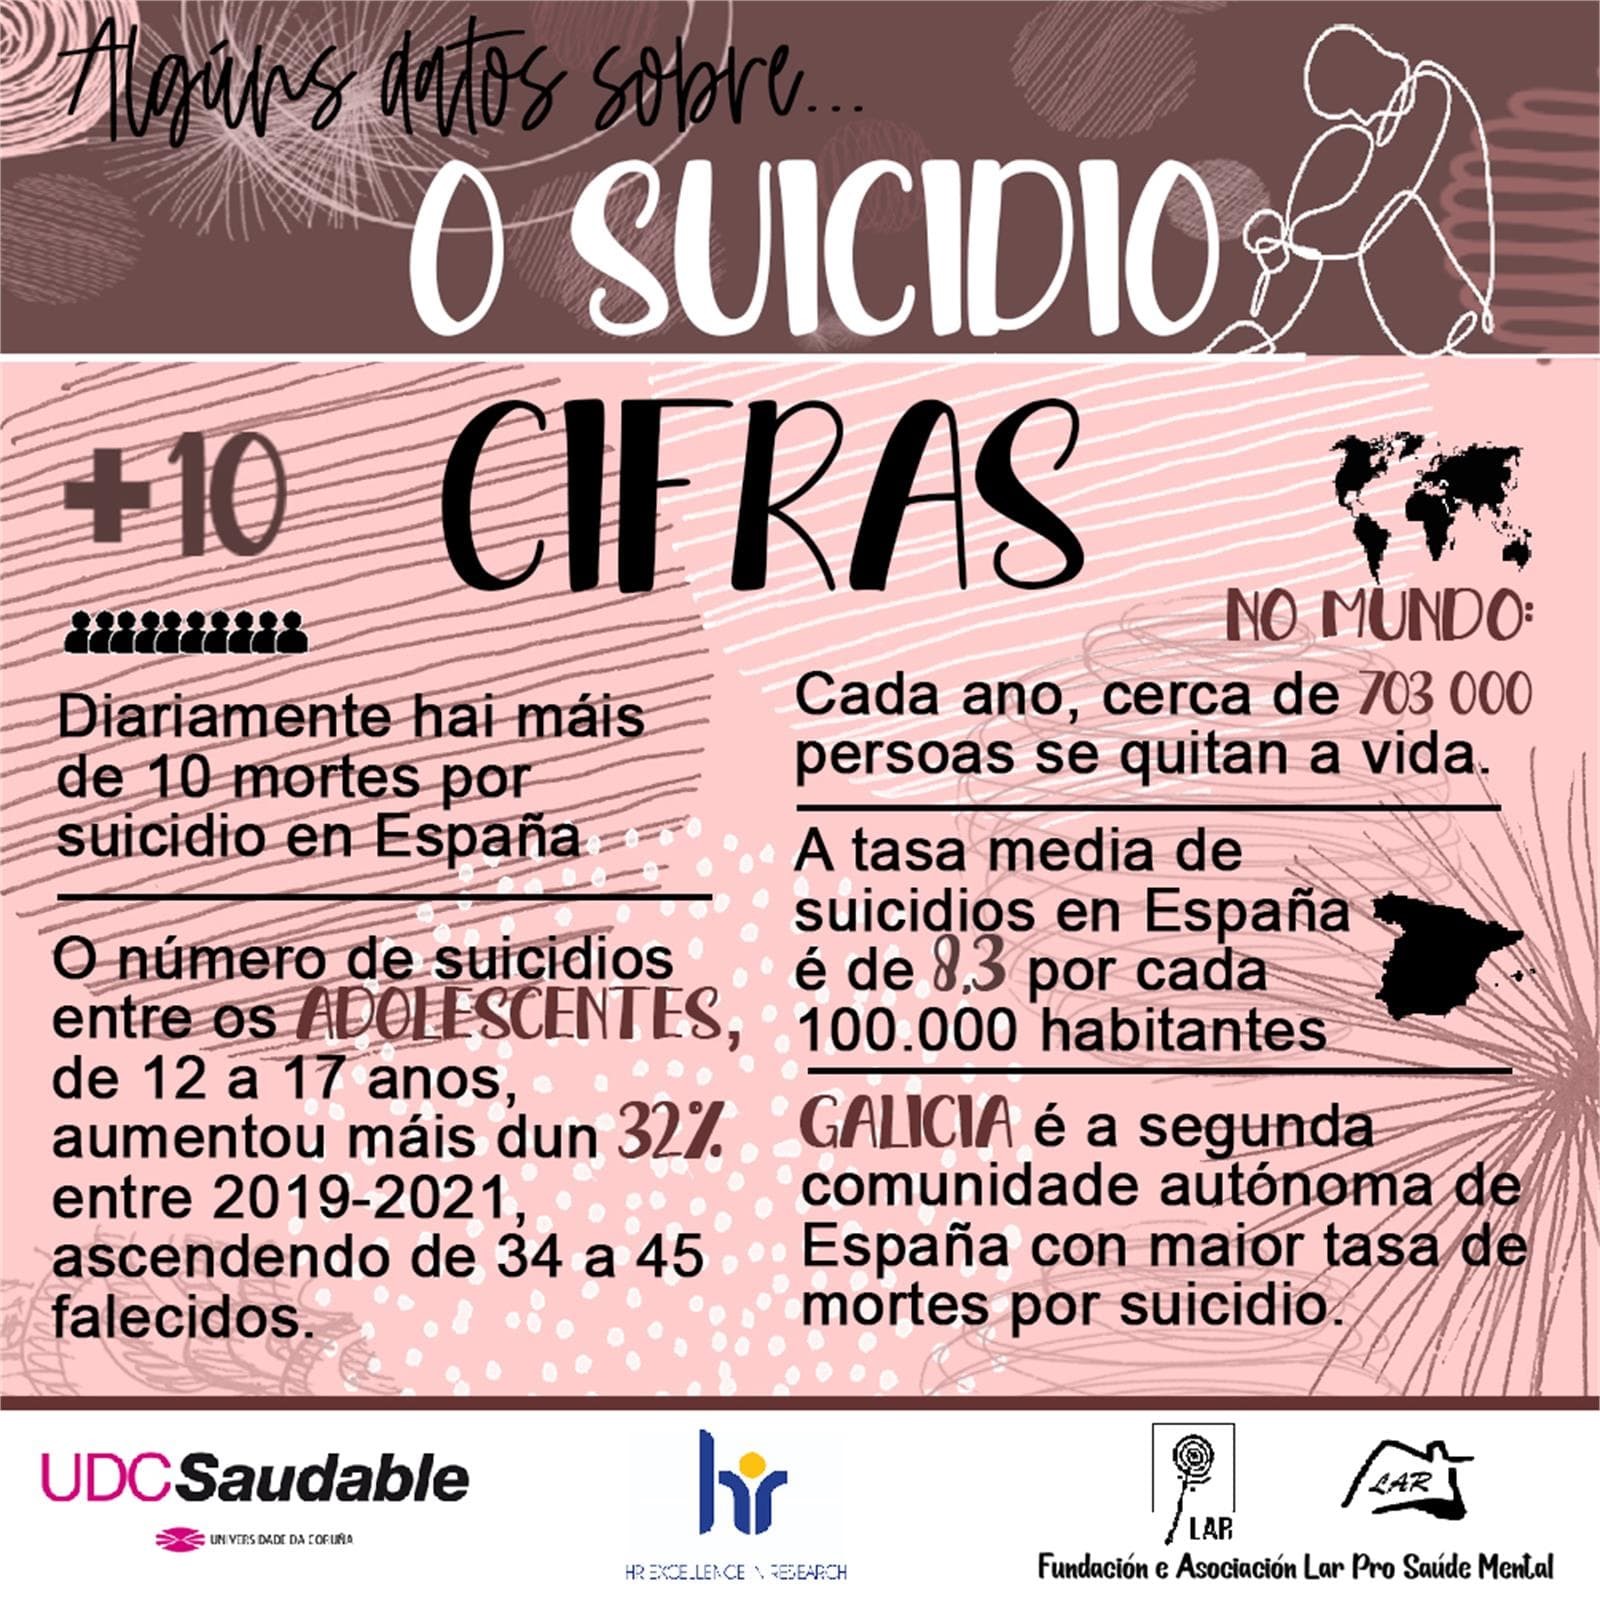 Algunos Datos sobre Suicidio... - LAR Pro Salud Mental - Imagen 2